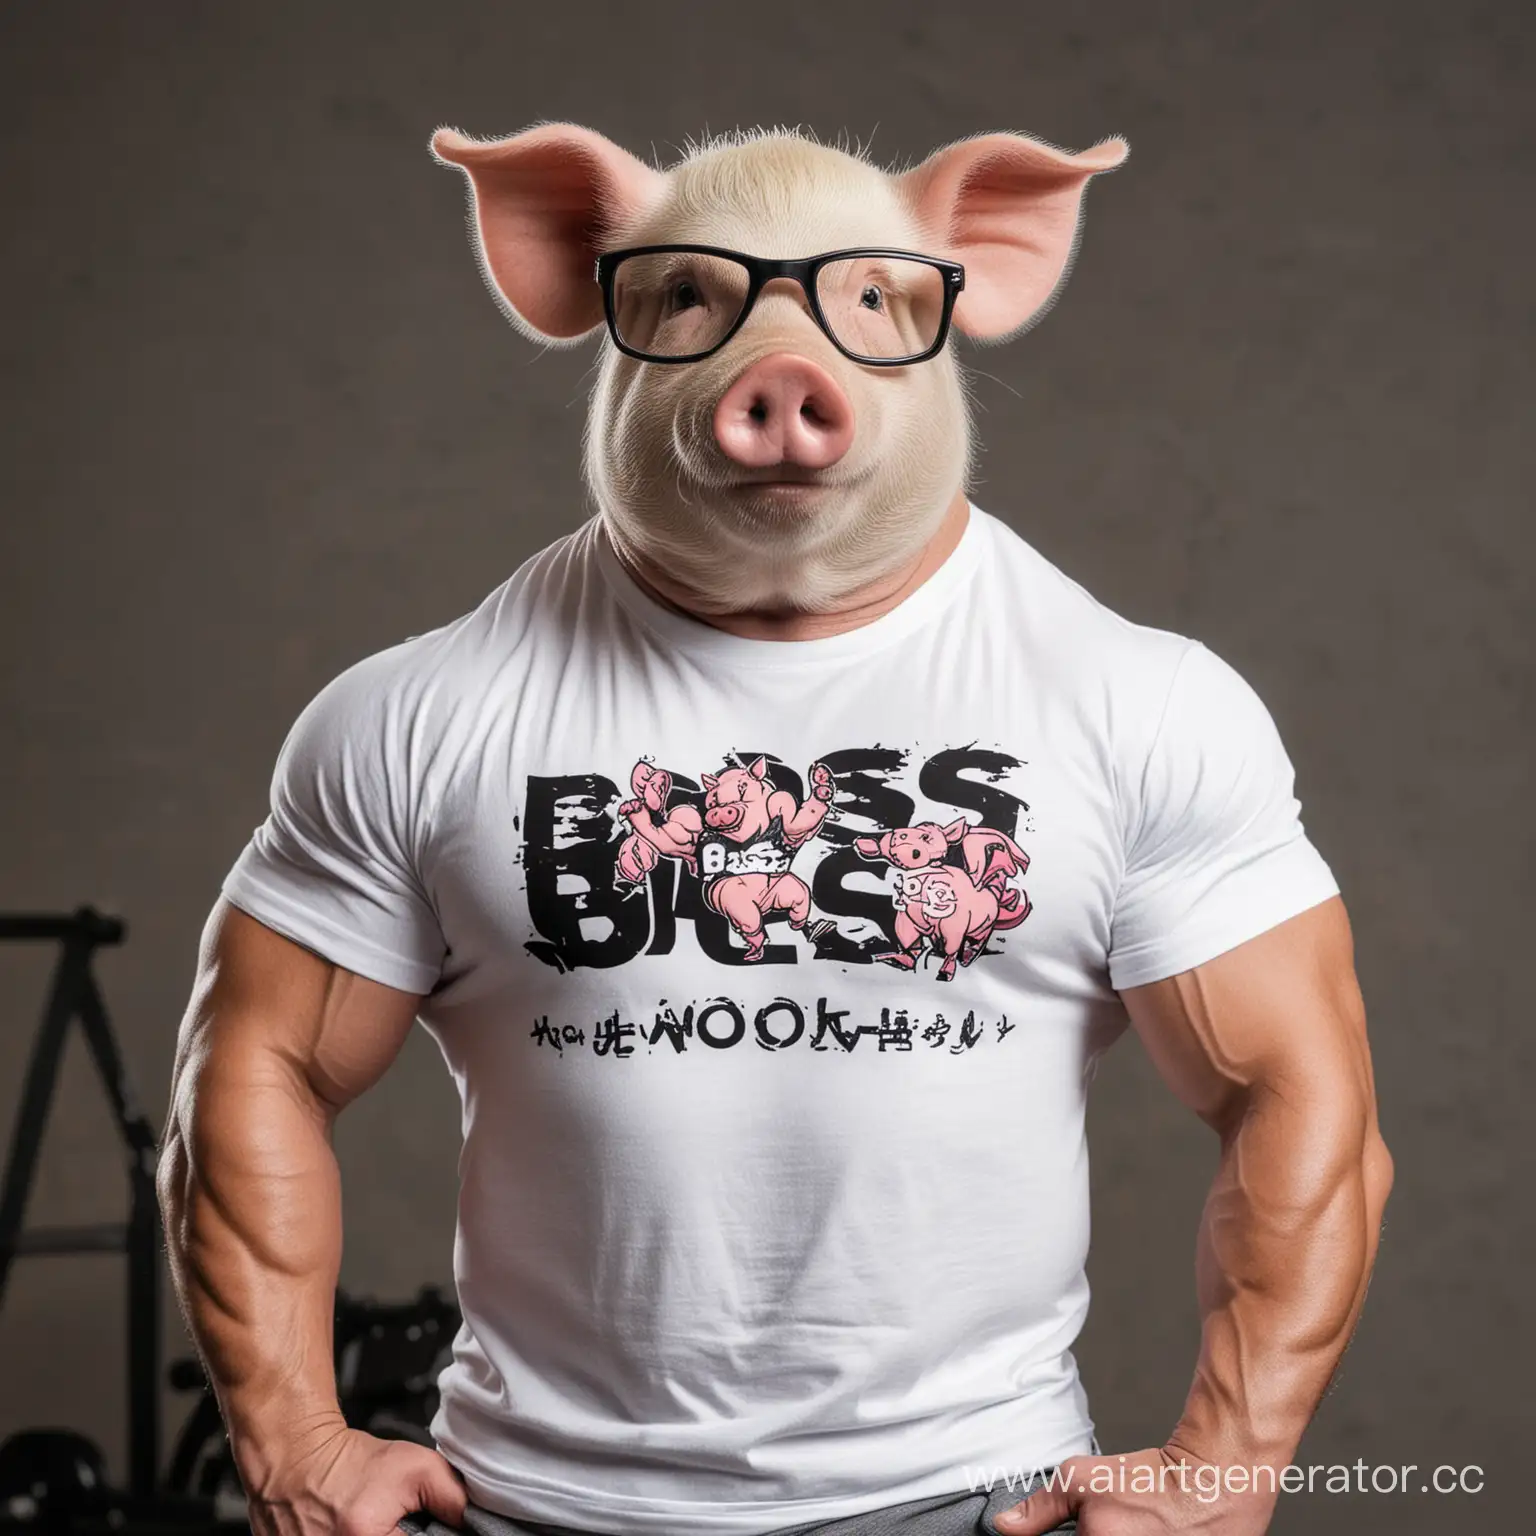 свинья бодибилдер в футболке с надписью "БОСС СВО"
